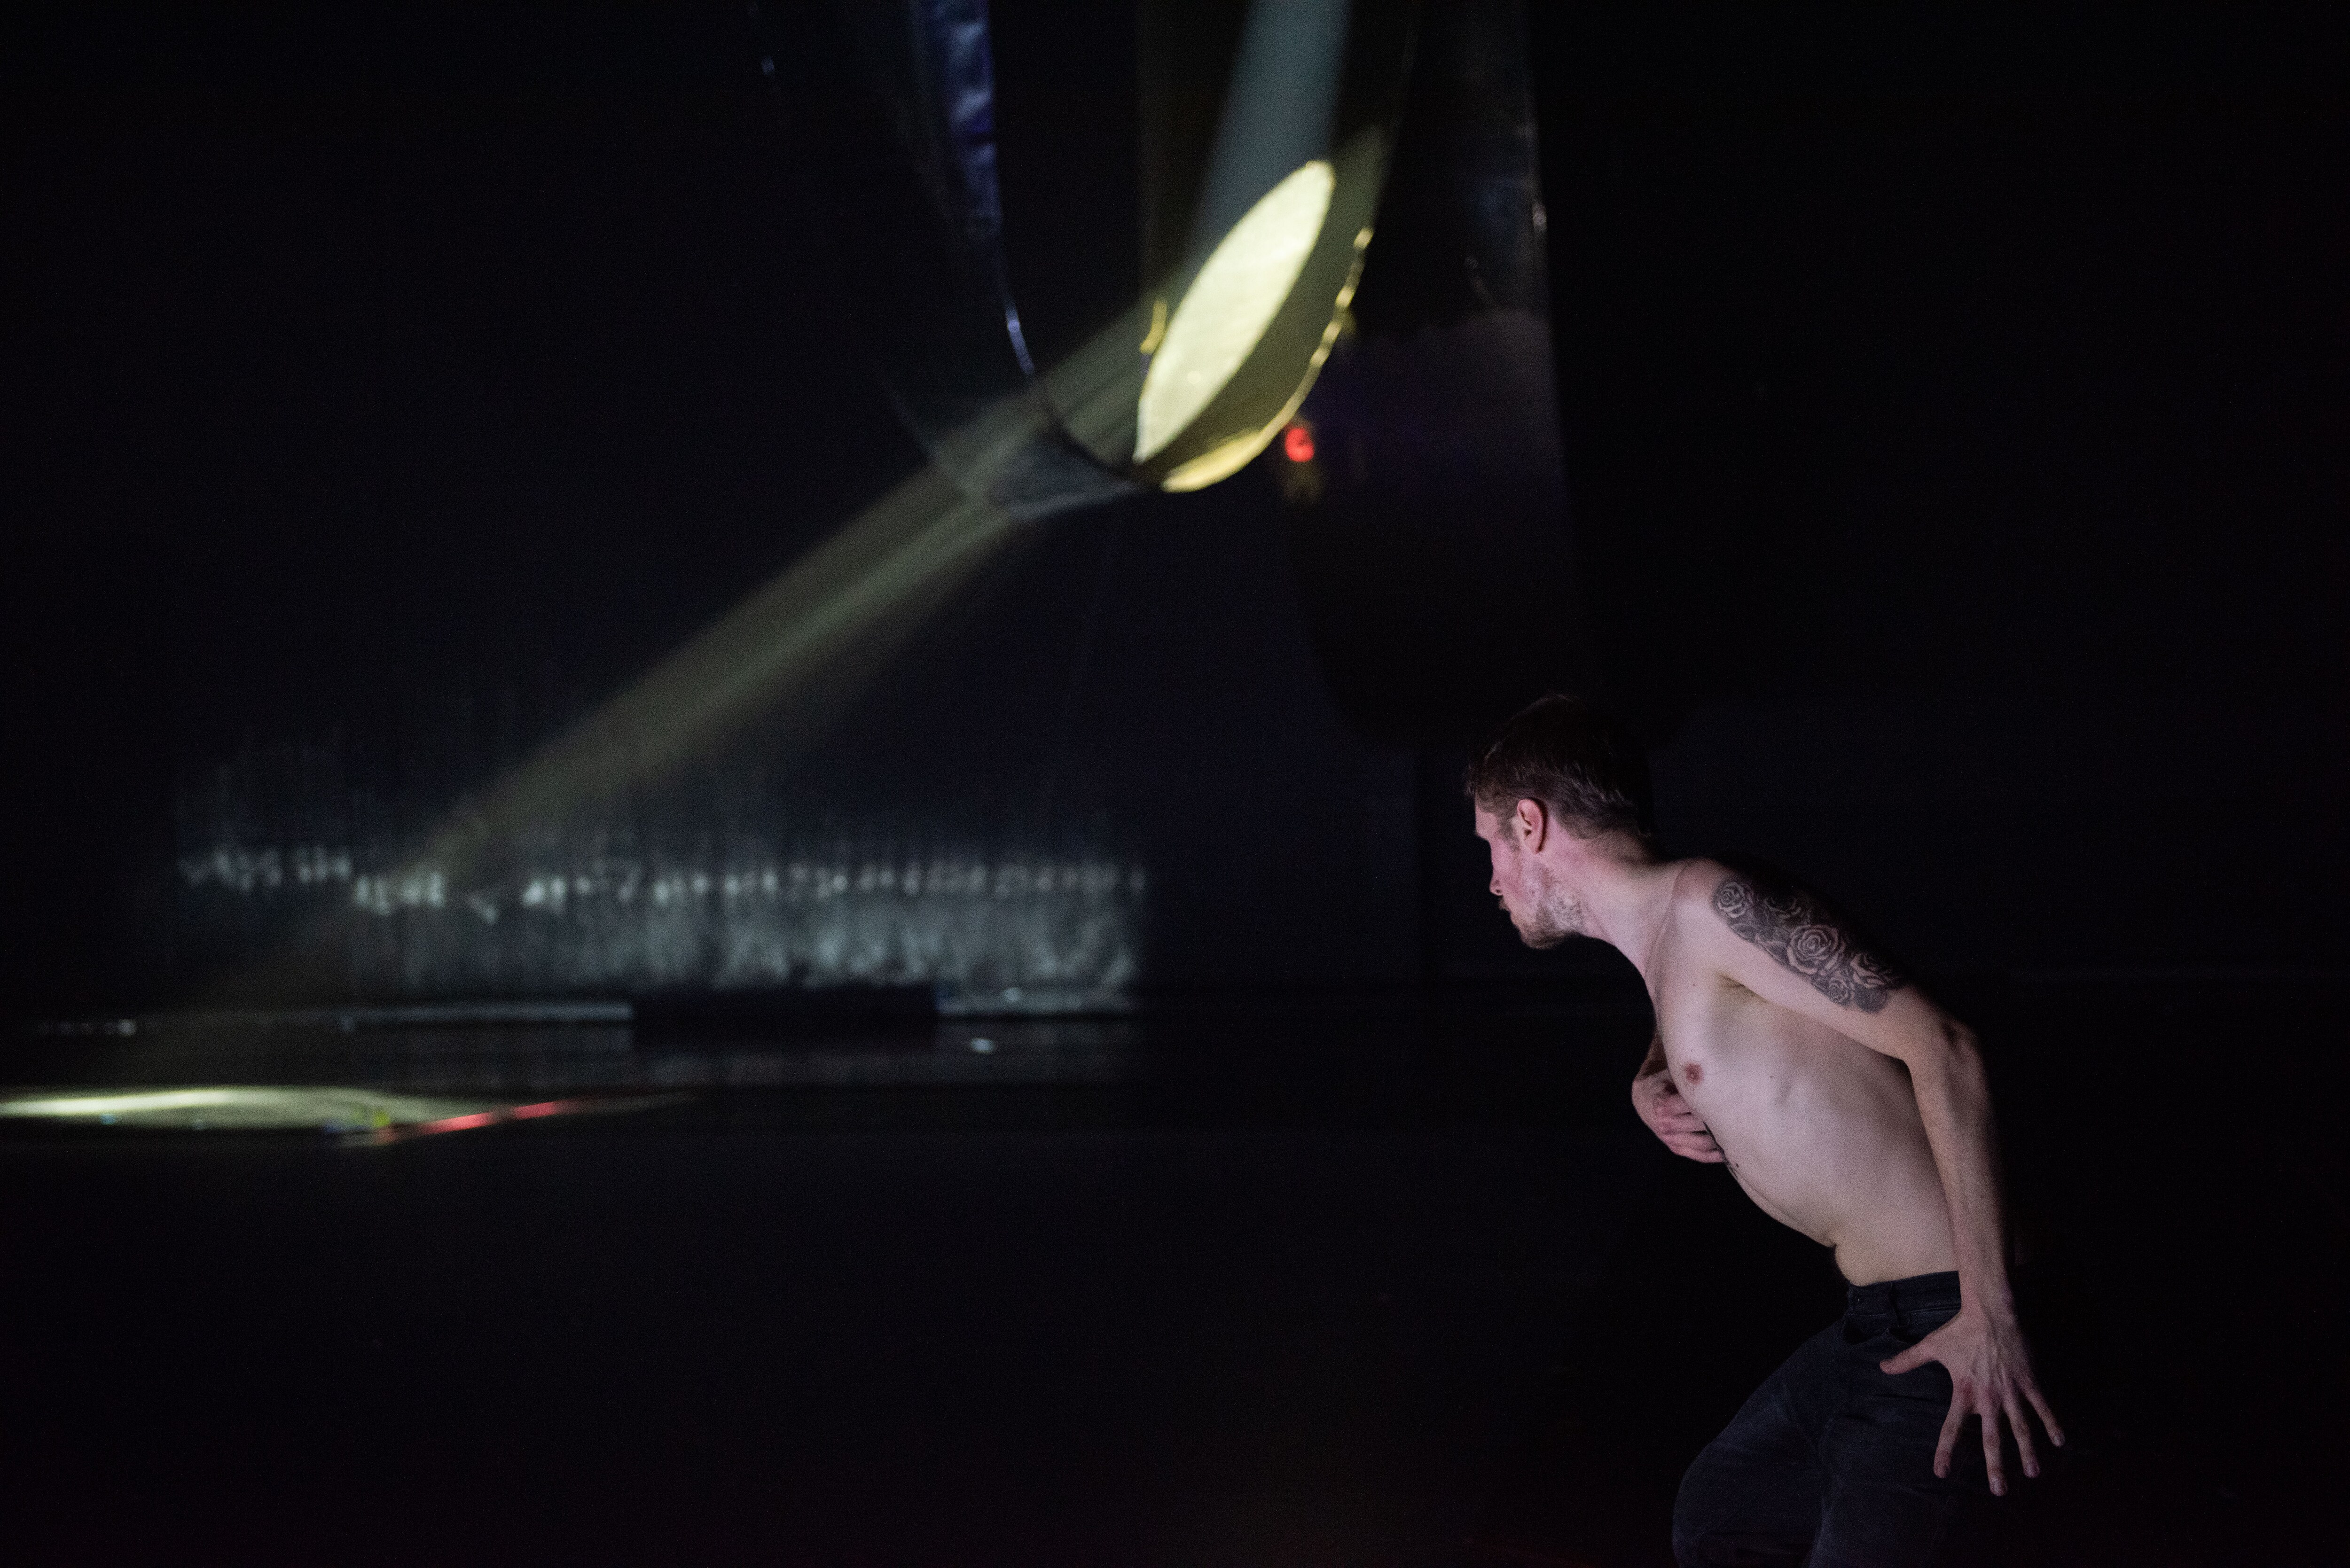 一位舞者在黑暗舞台上，面对一个散发出一束光线的建筑物